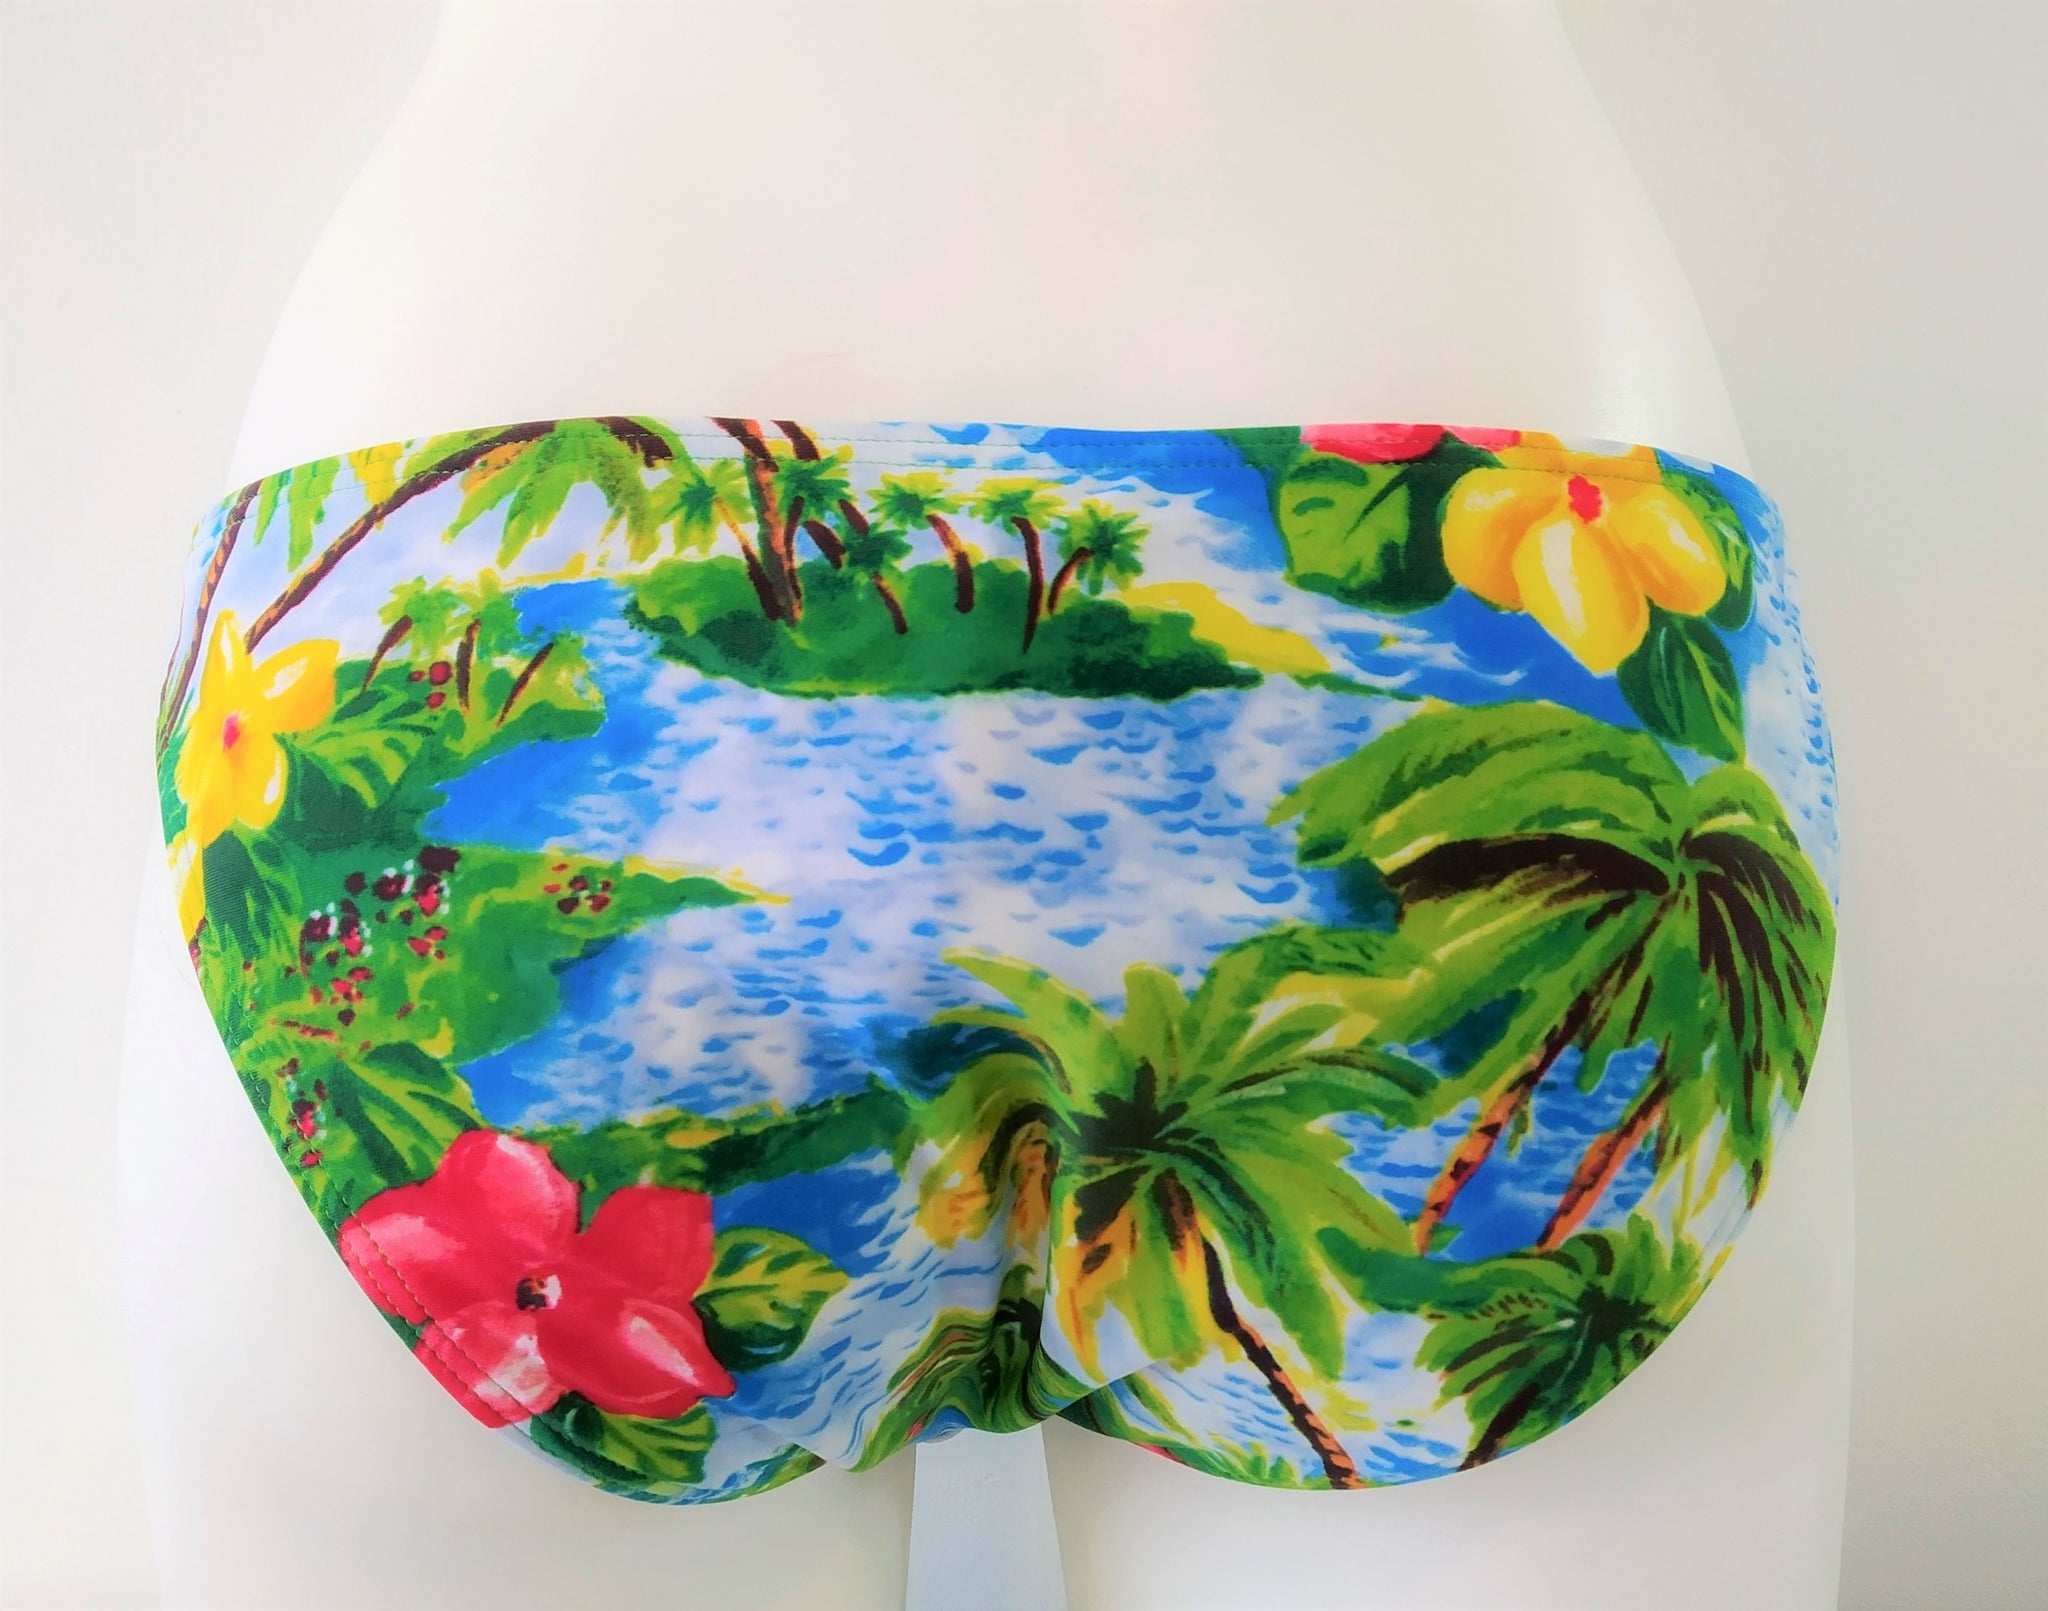 Green Island regular bikini bottom